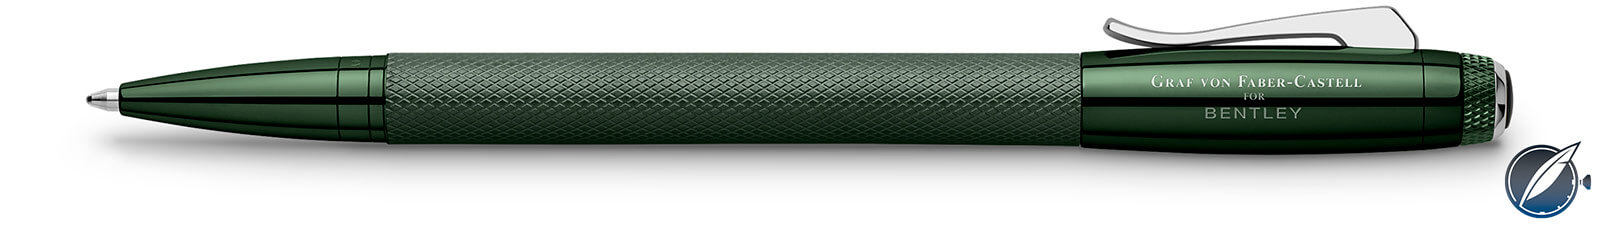 Graf Von Faber Castell Bentley Limited Edition Barnato Pen: A